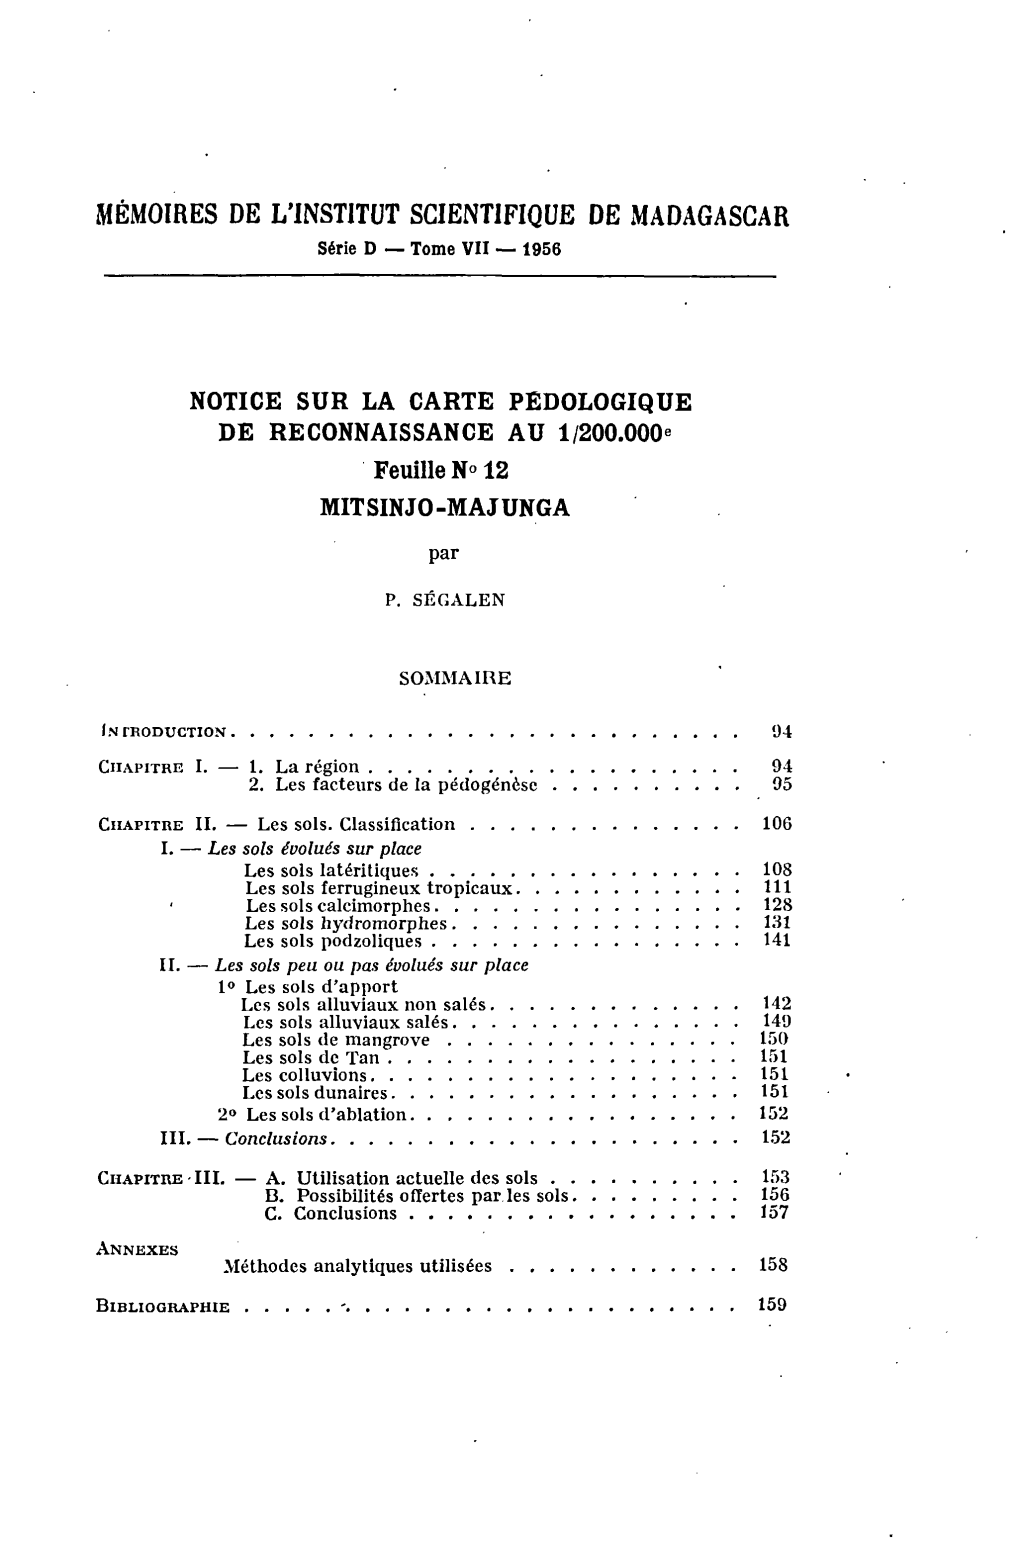 Notice Sur La Carte Pédologique De Reconnaissance Au 1/200 000 : Feuille No 12, Mitsinjo-Majunga